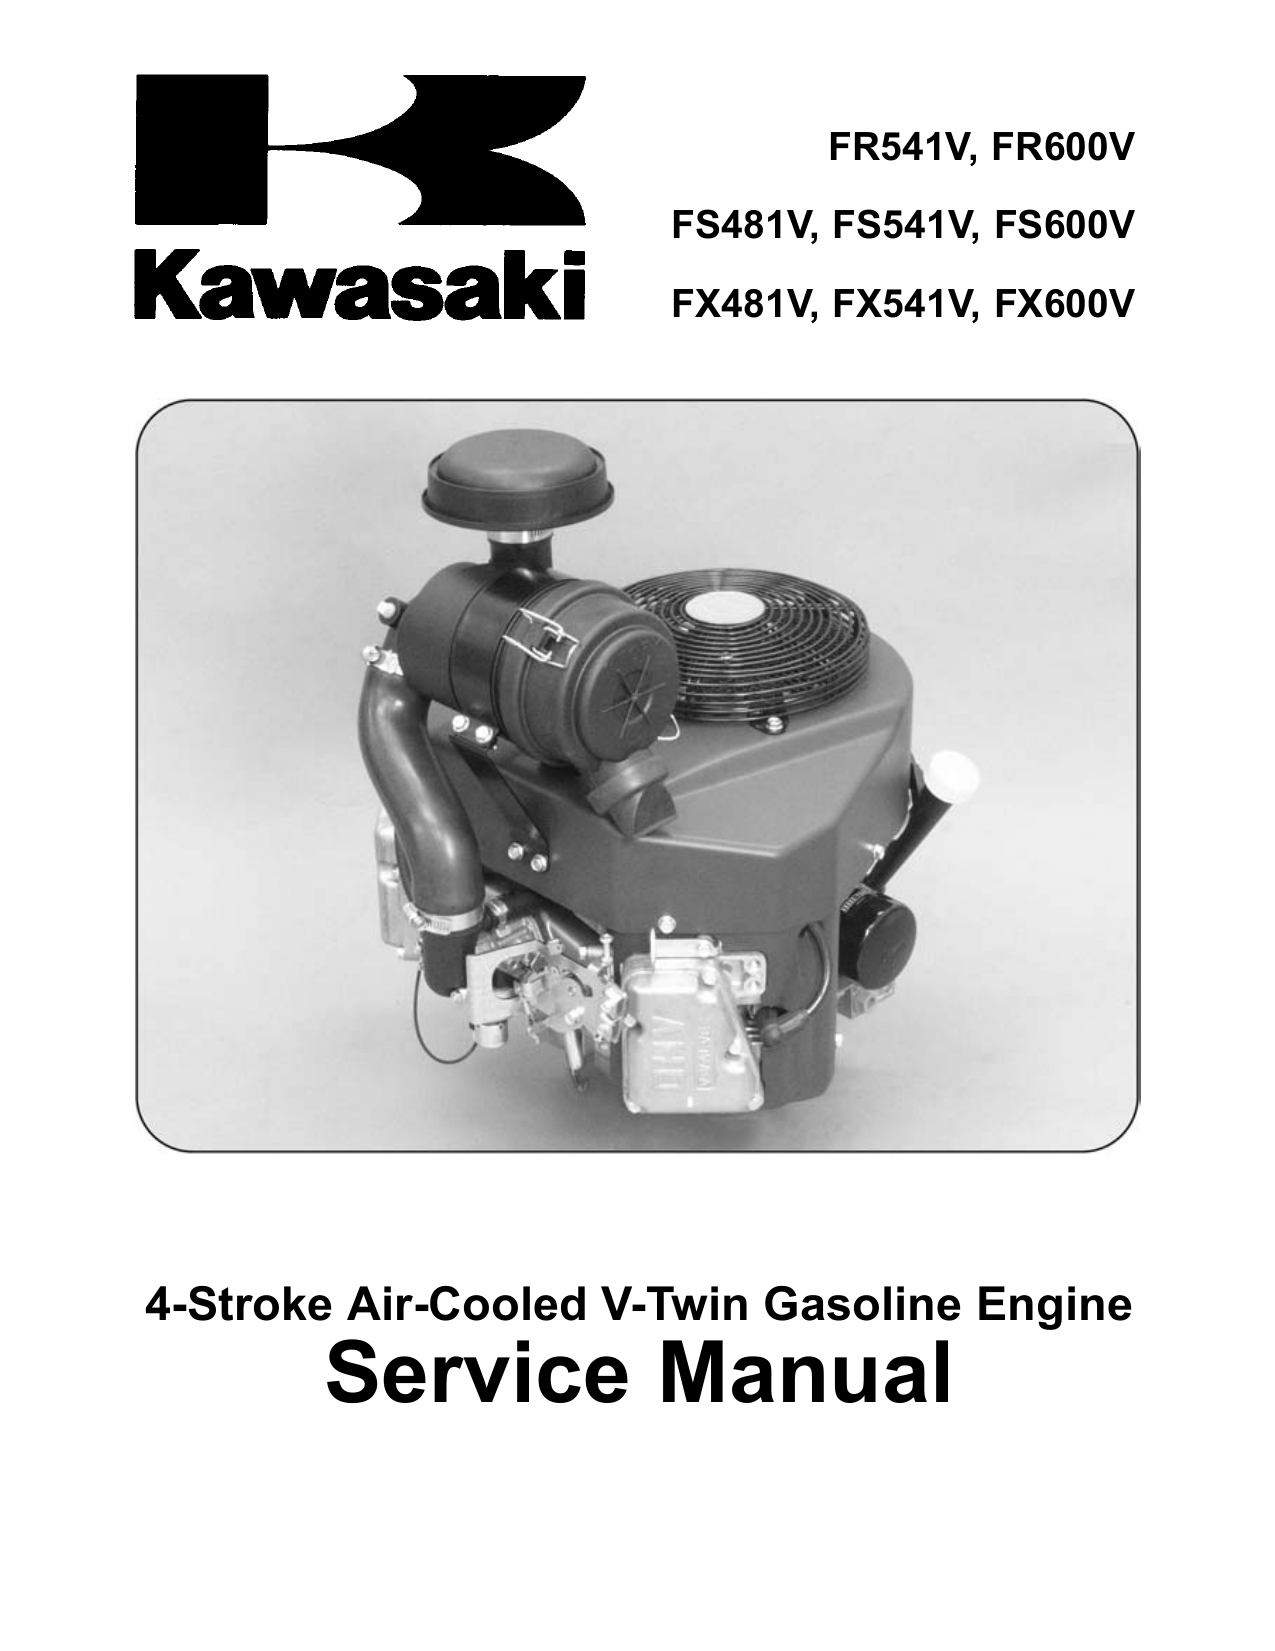 FS481V GENUINE OEM KAWASAKI PART # 12004-0740 INTAKE VALVE FOR FR600V FS541V